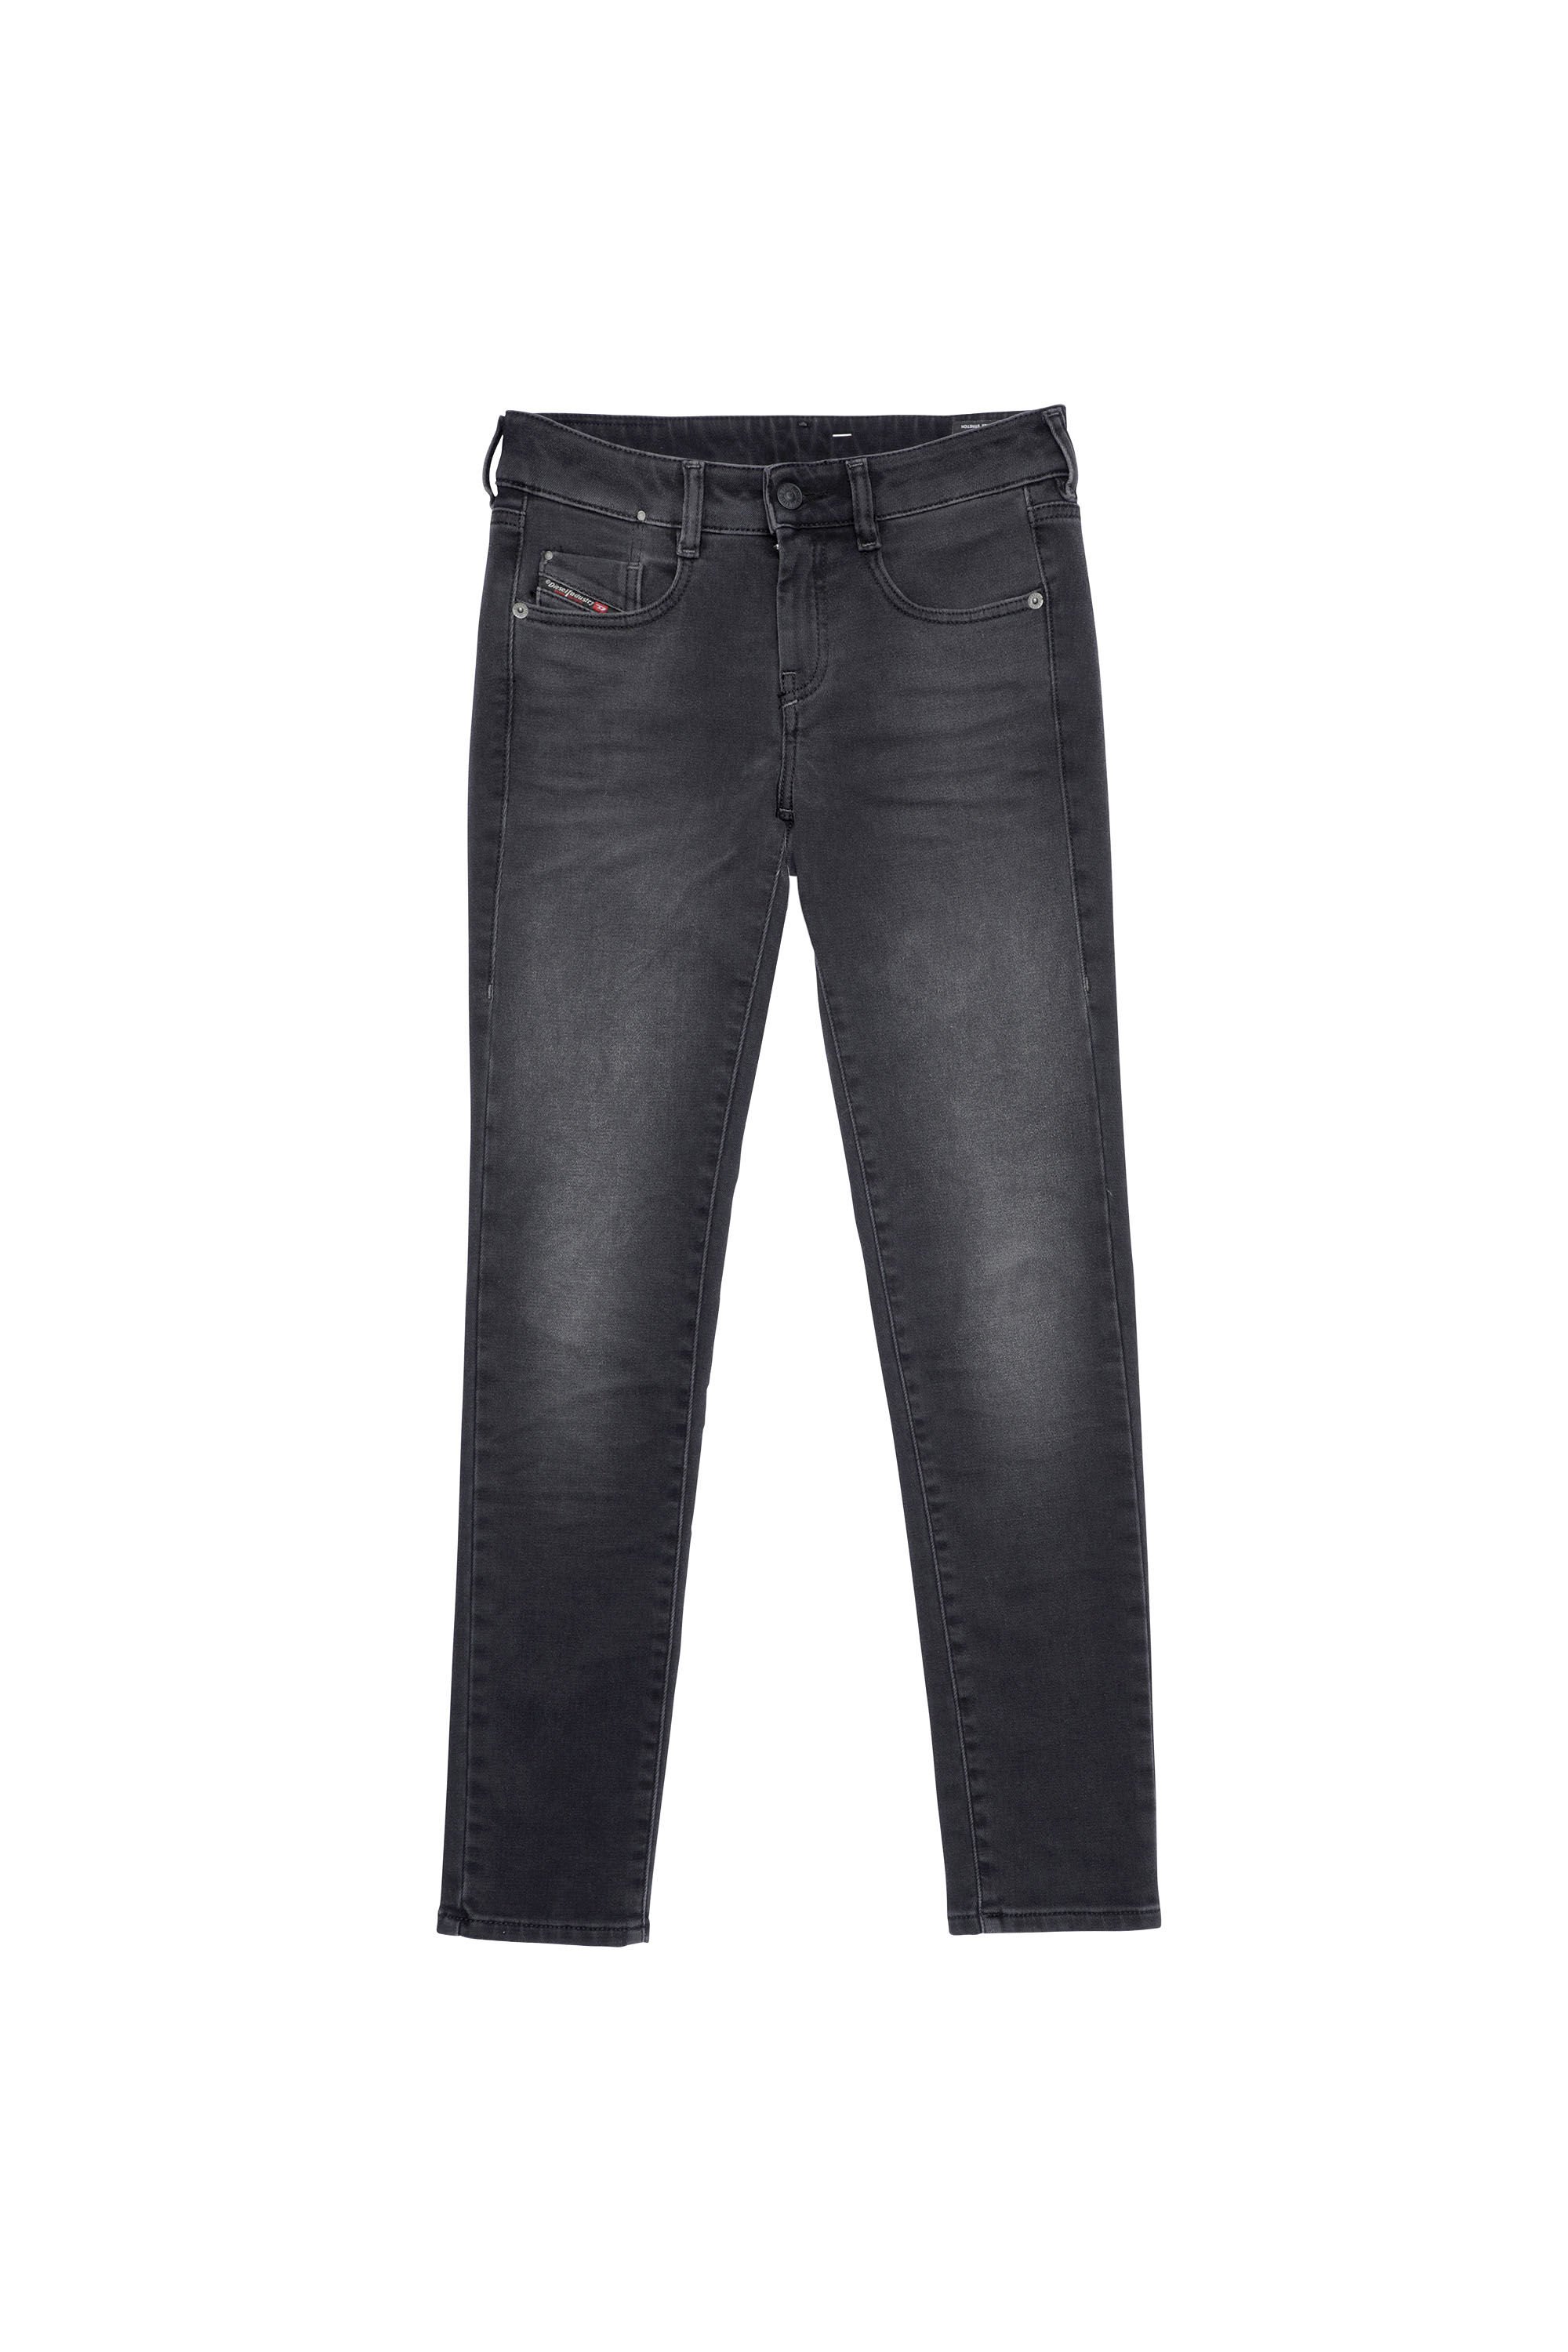 Diesel - D-Ollies JoggJeans® 09B22 Slim, Black/Dark Grey - Image 2